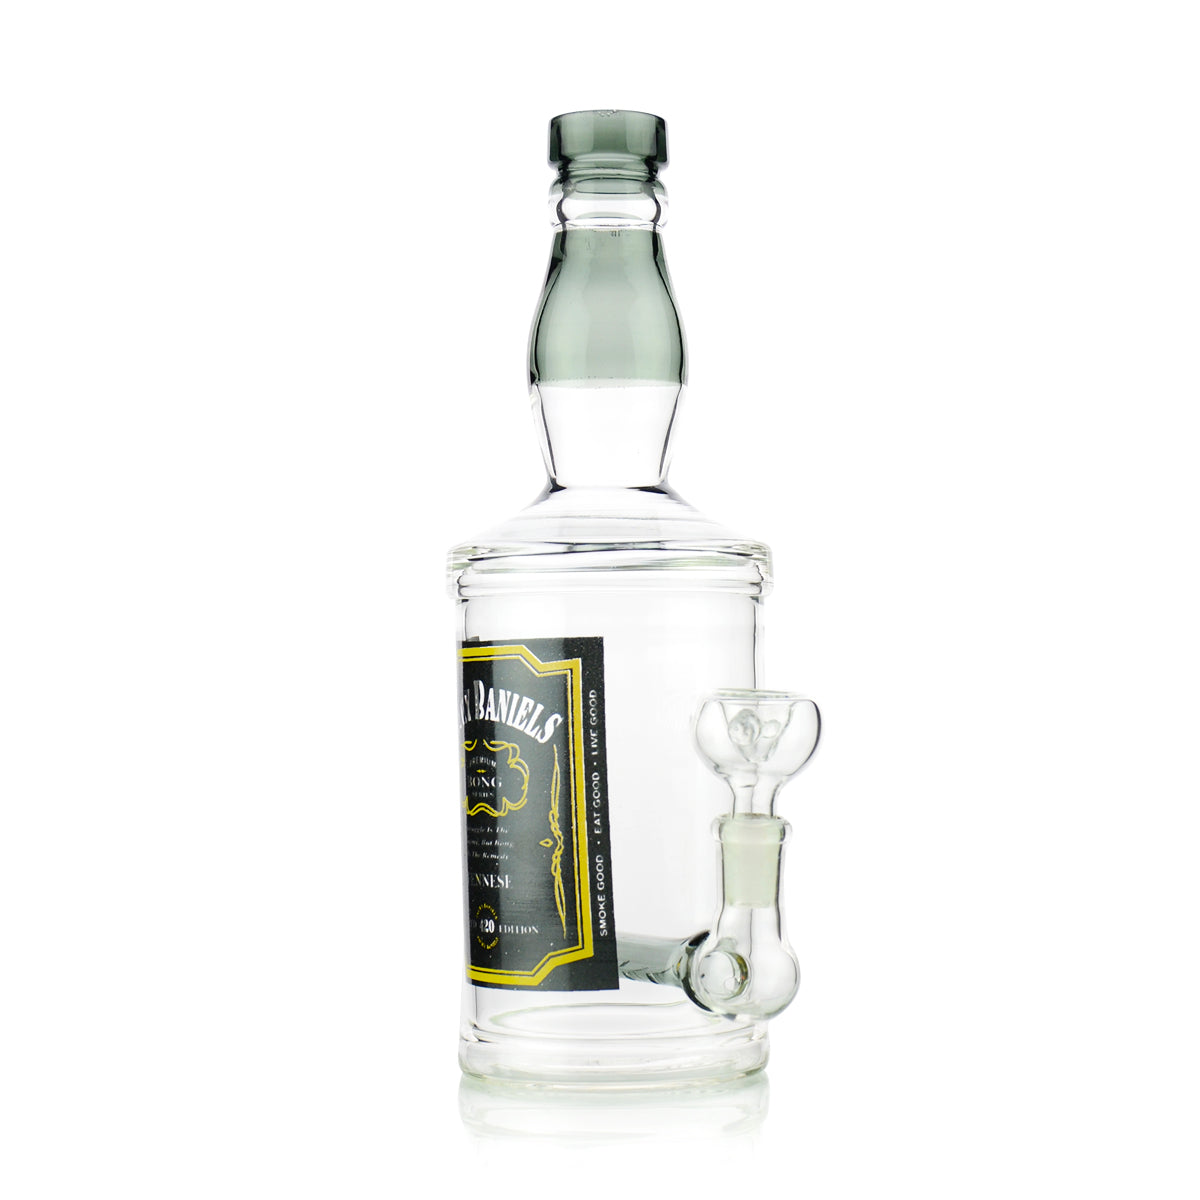 10" Smoke Liquor Bottle Jacky Water Pipe 14mm Male Bowl Included - LA Wholesale Kings